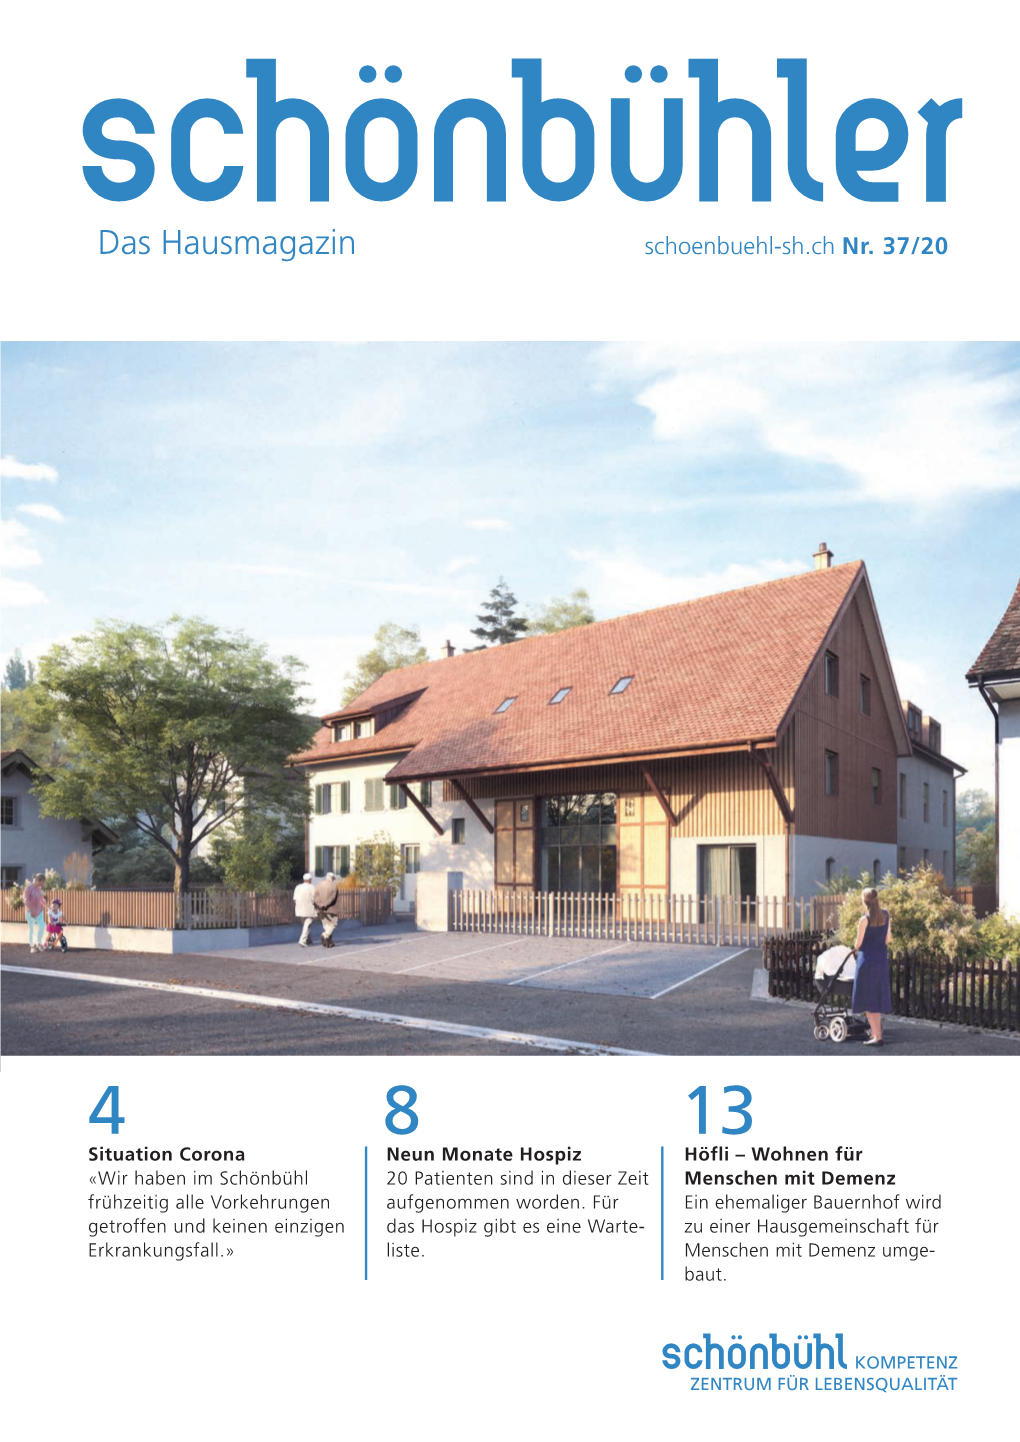 Schönbühler» Das Hausmagazin REDAKTION Theo Deutschmann, Wolfgang Schreiber Marcel Krauss KONZEPT | LAYOUT | DRUCK Signa AG, St